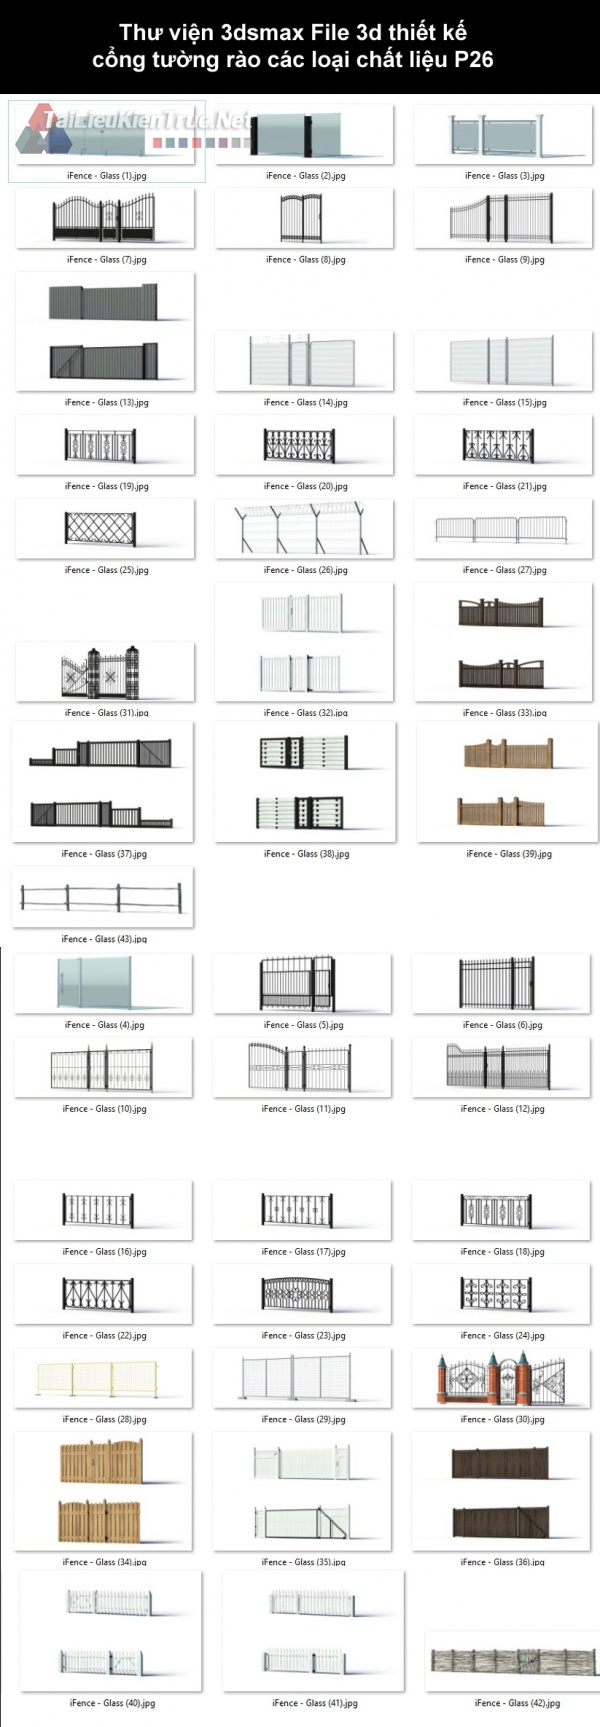 Thư viện 3dsmax File 3d thiết kế cổng tường rào các loại chất liệu P26